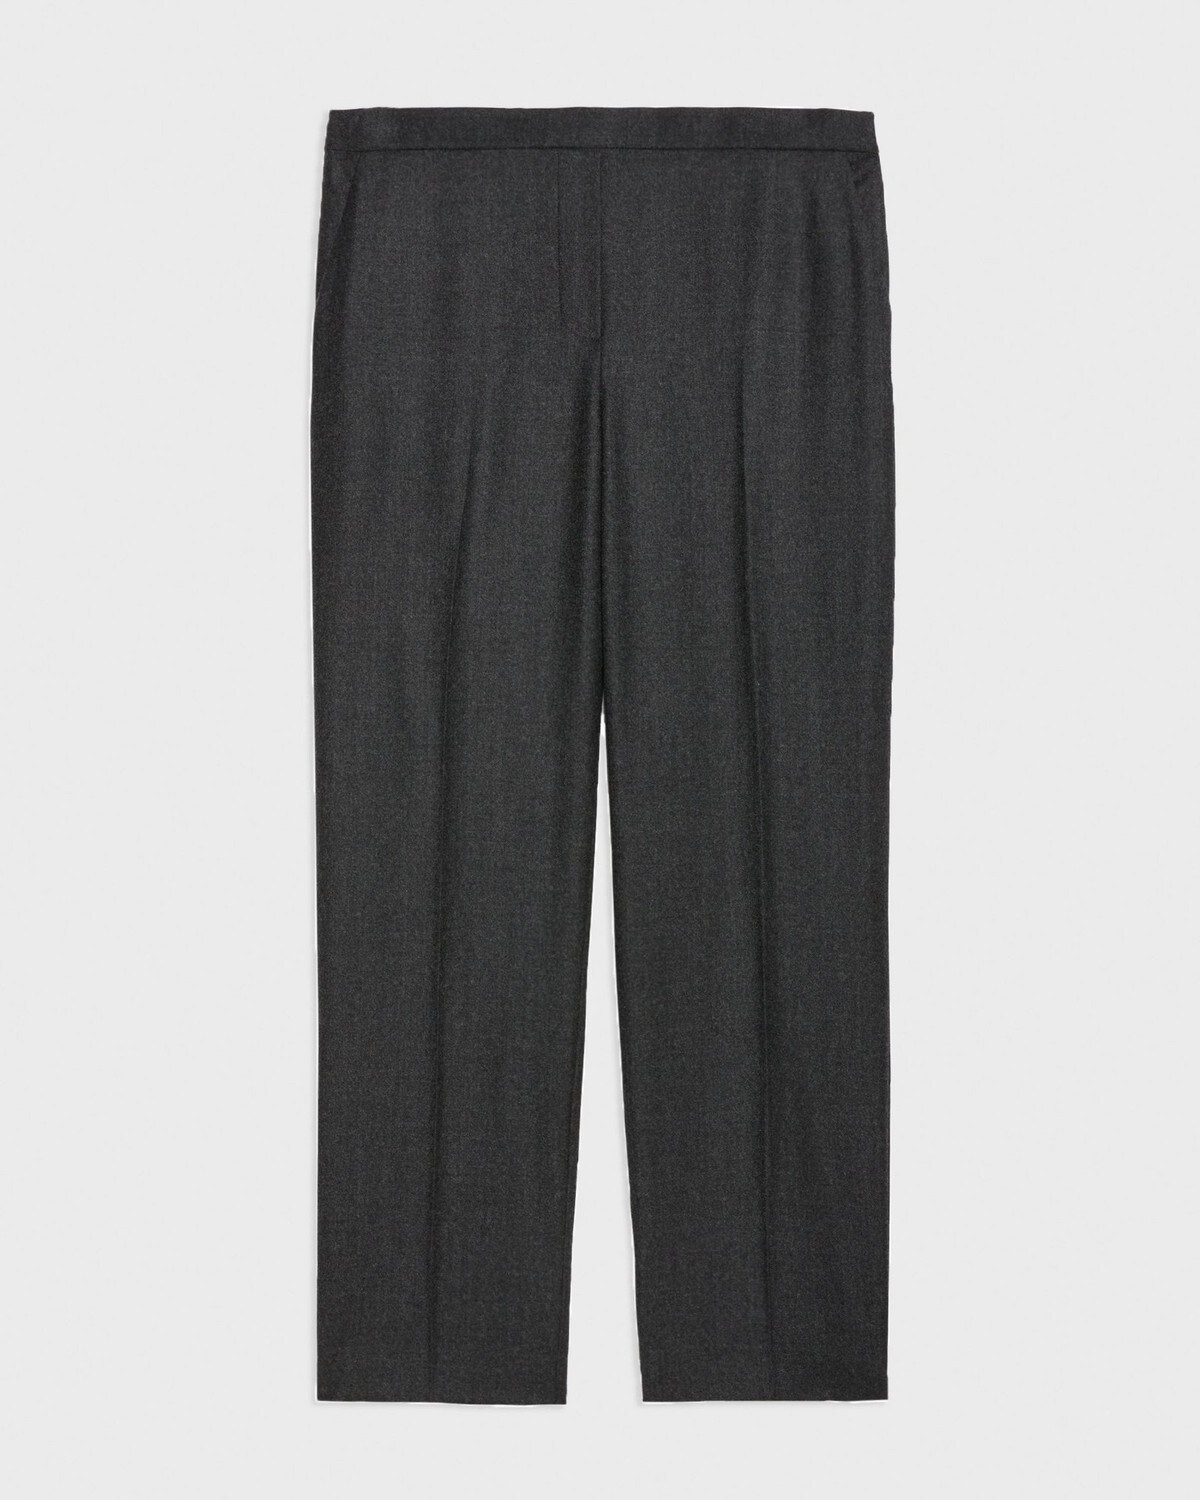 Treeca Pull-On Pant in Sleek Flannel